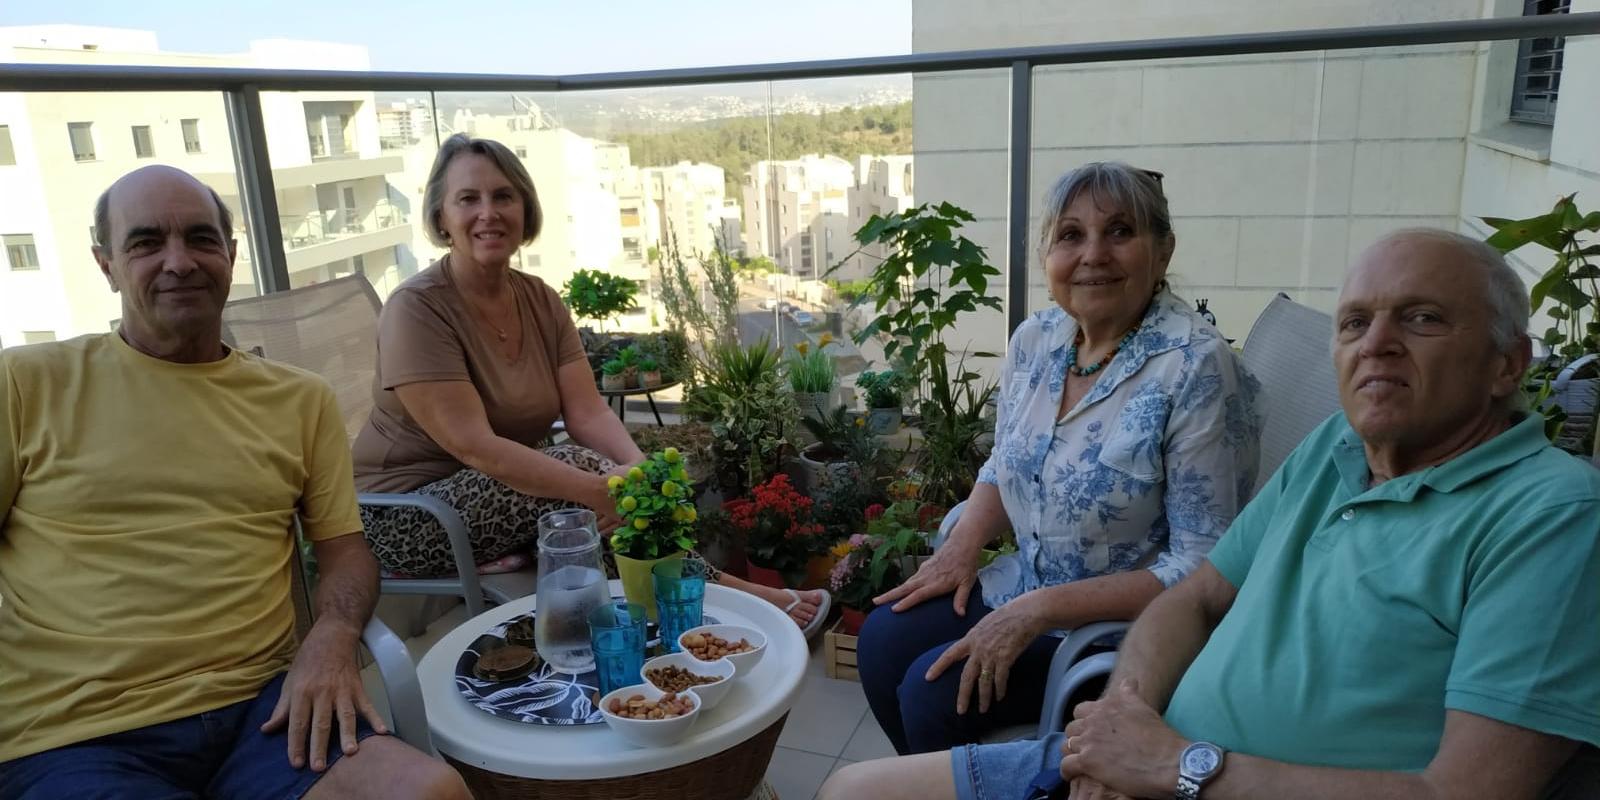 מפגש מרגש: חיים פרנץ וברוך רוט עם נשותיהם במרפסת חריש